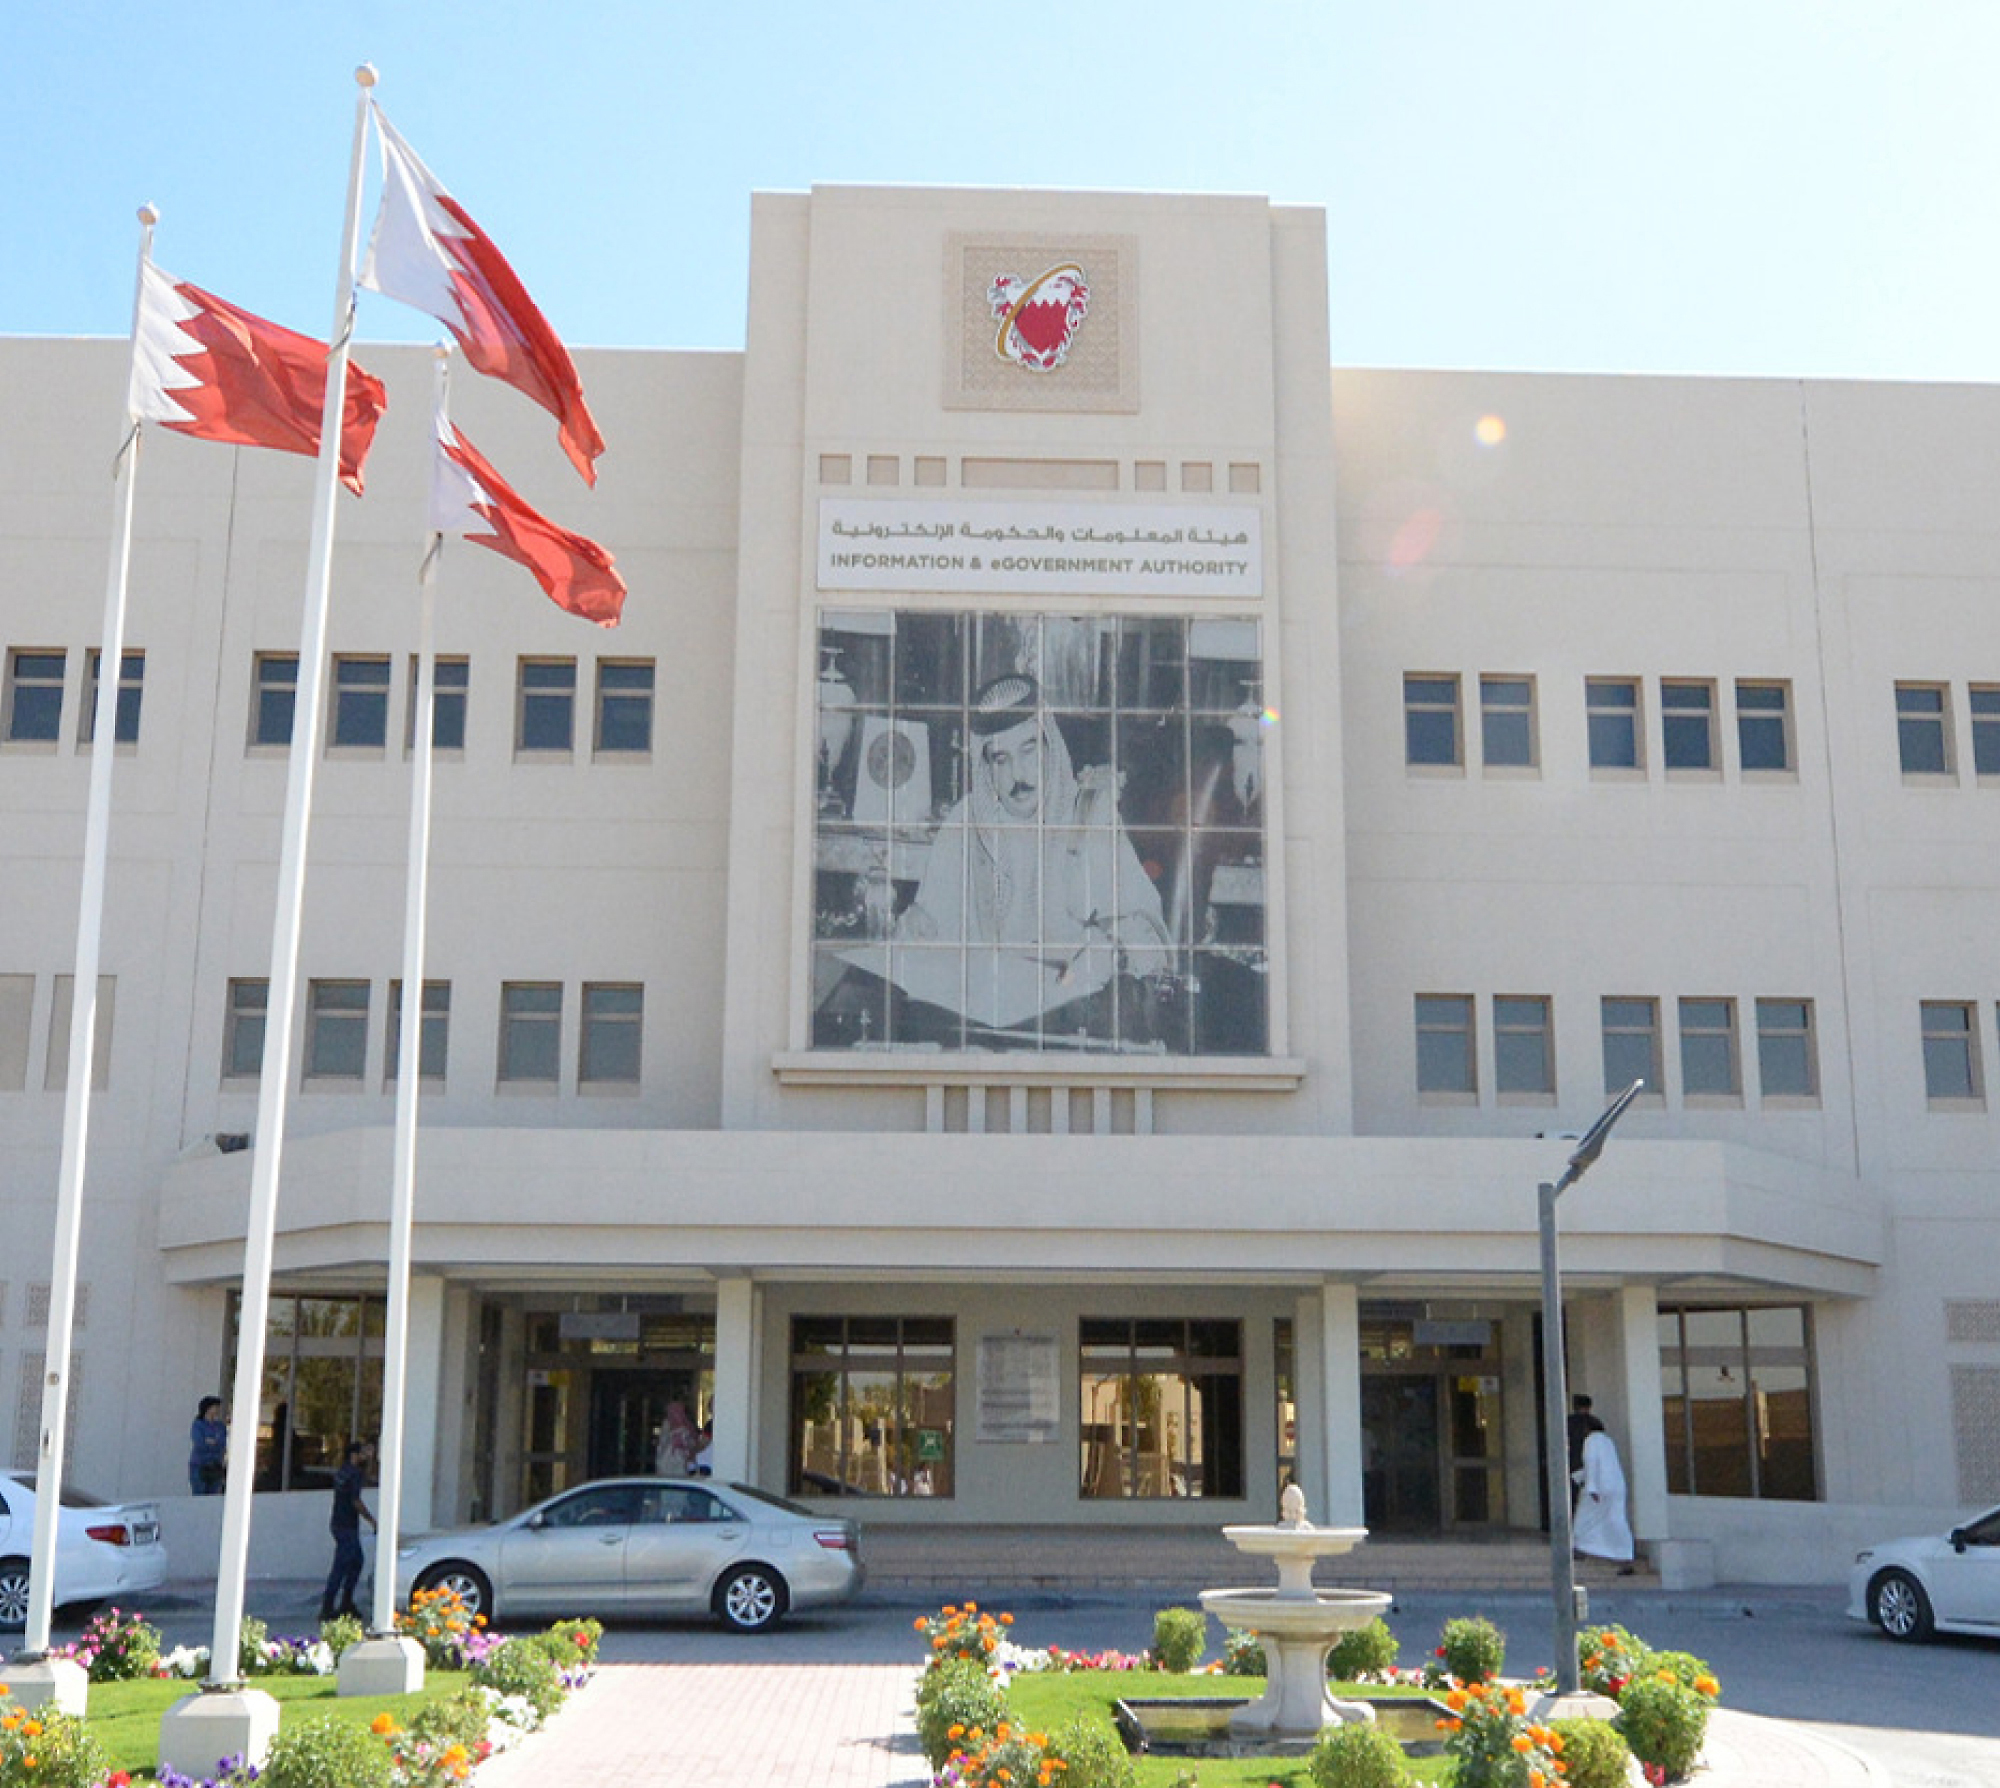 Vorderansicht des Information & eGovernment Authority-Gebäudes in Bahrain mit gehisster Nationalflagge